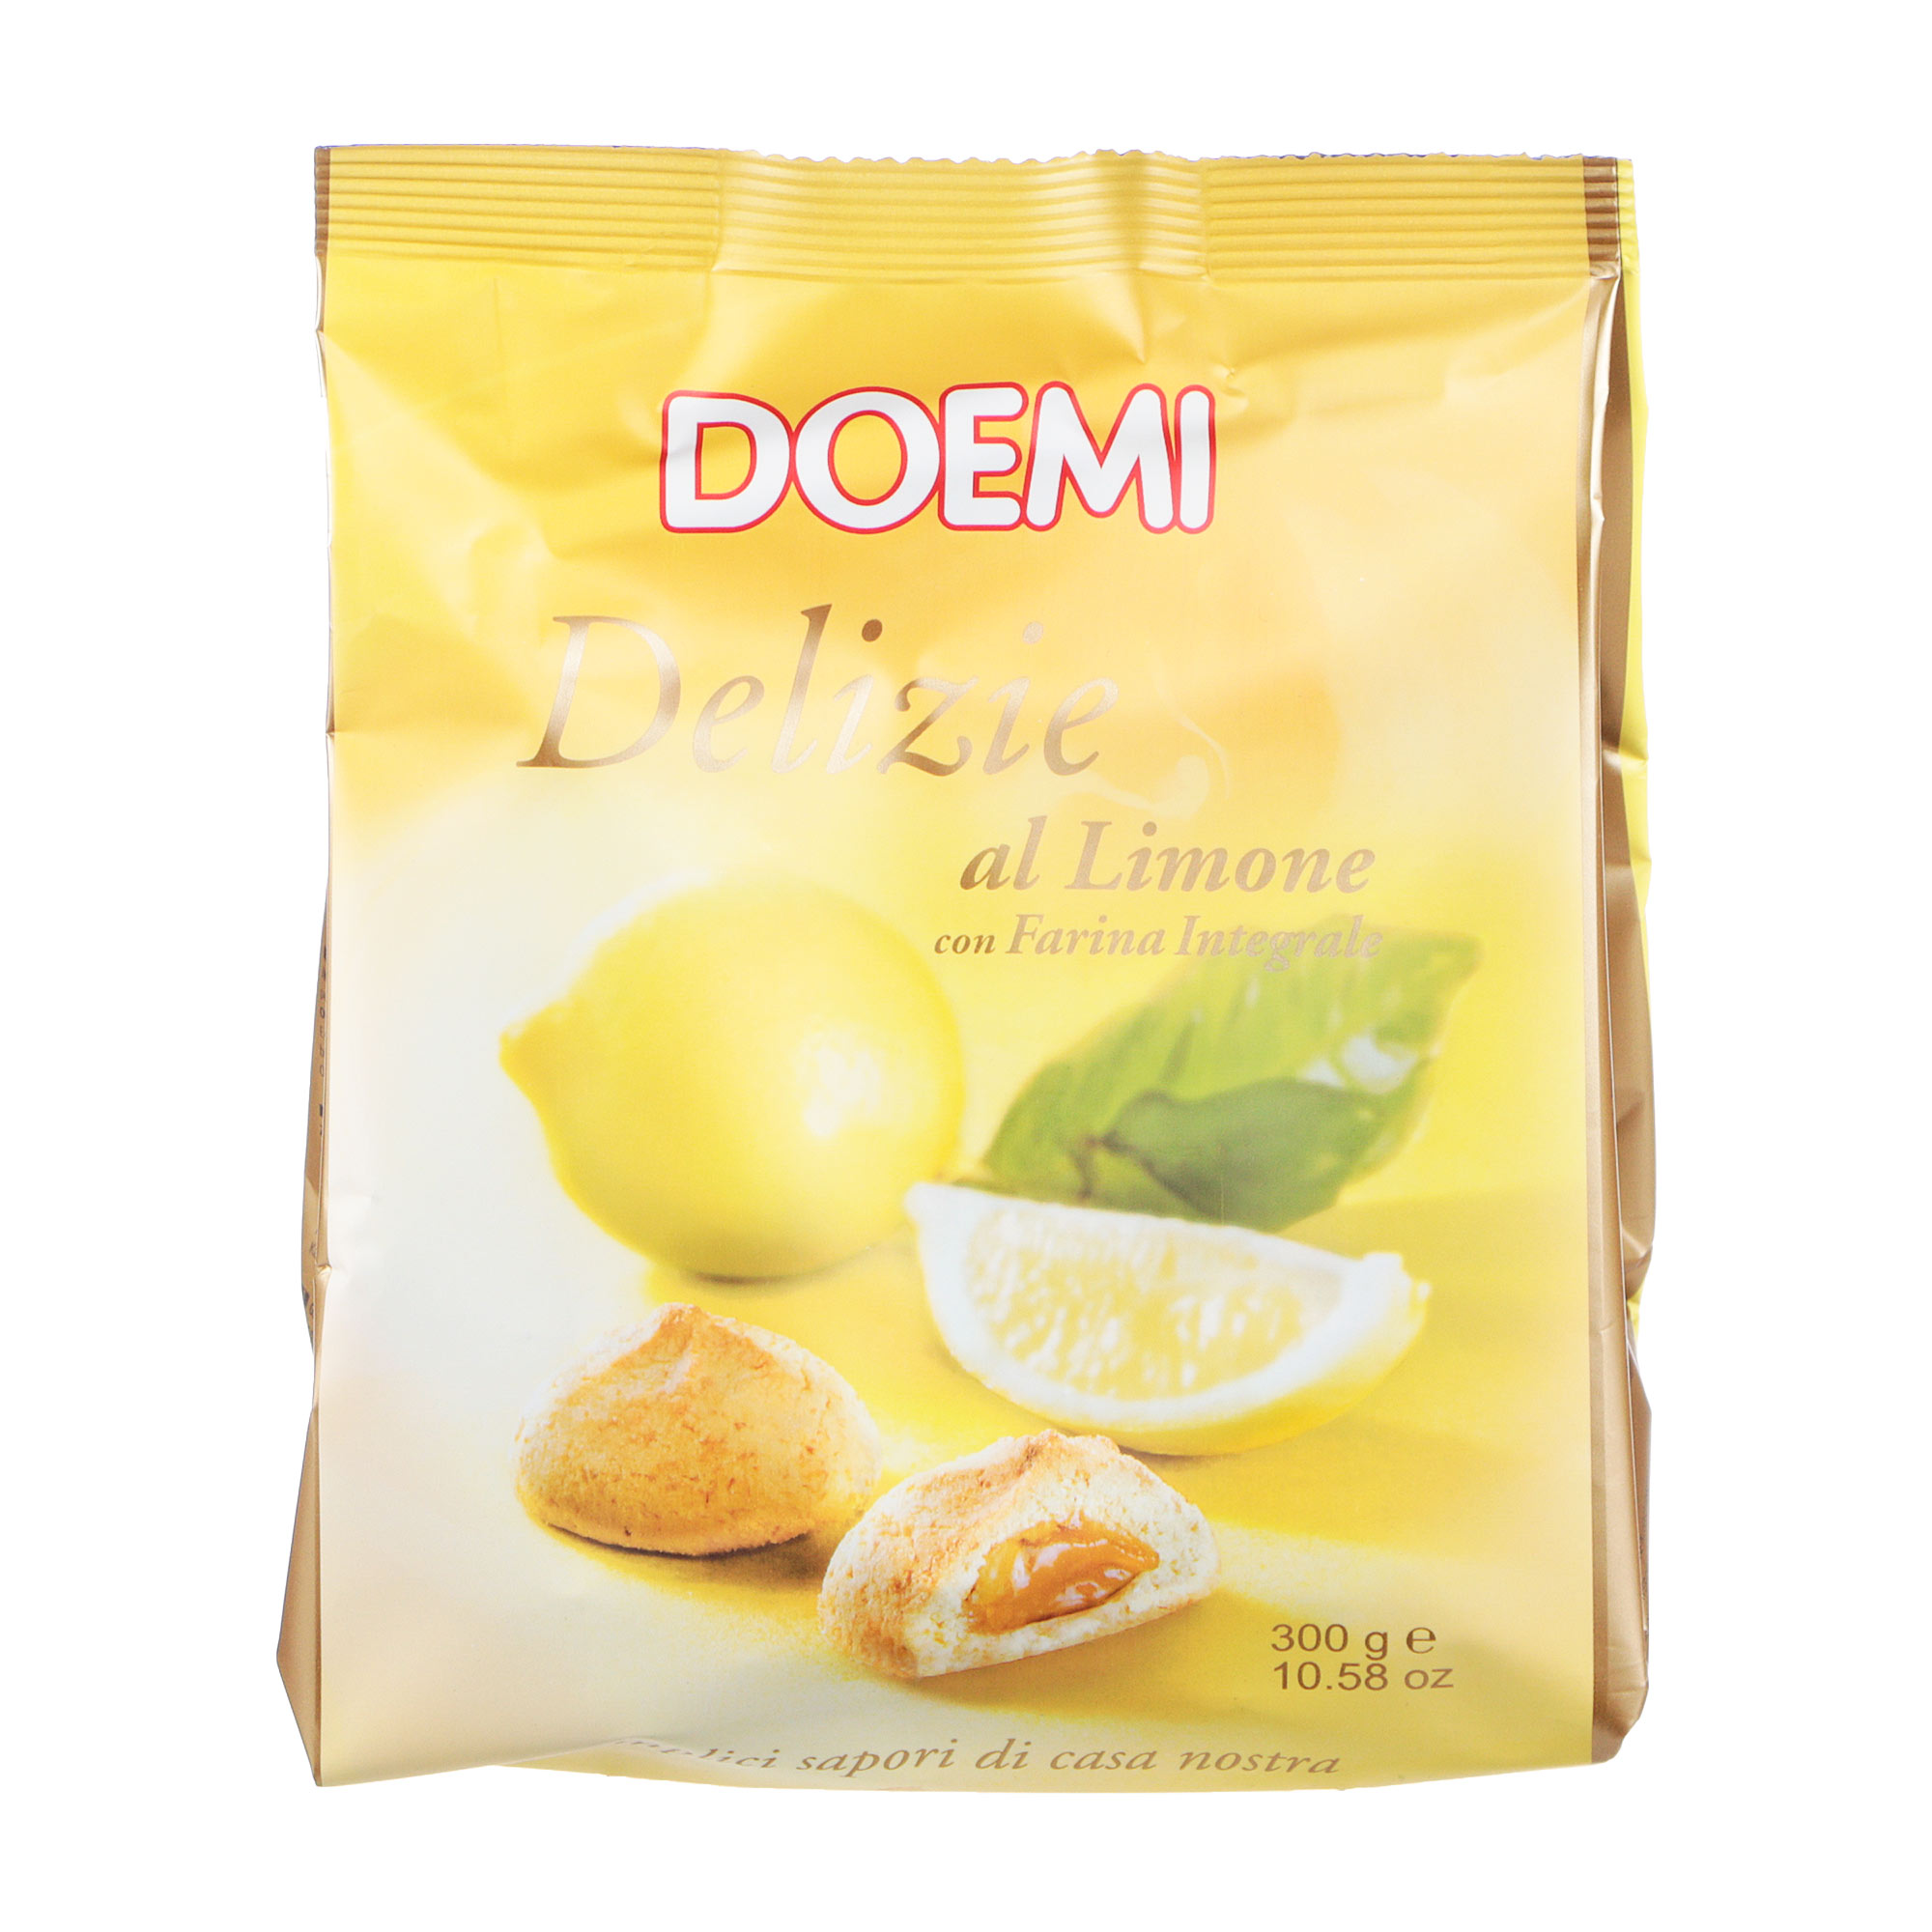 Печенье DOEMI Delights с лимонным кремом, 300 г печенье сэндвич ulker в шоколаде с кремом шелковицы